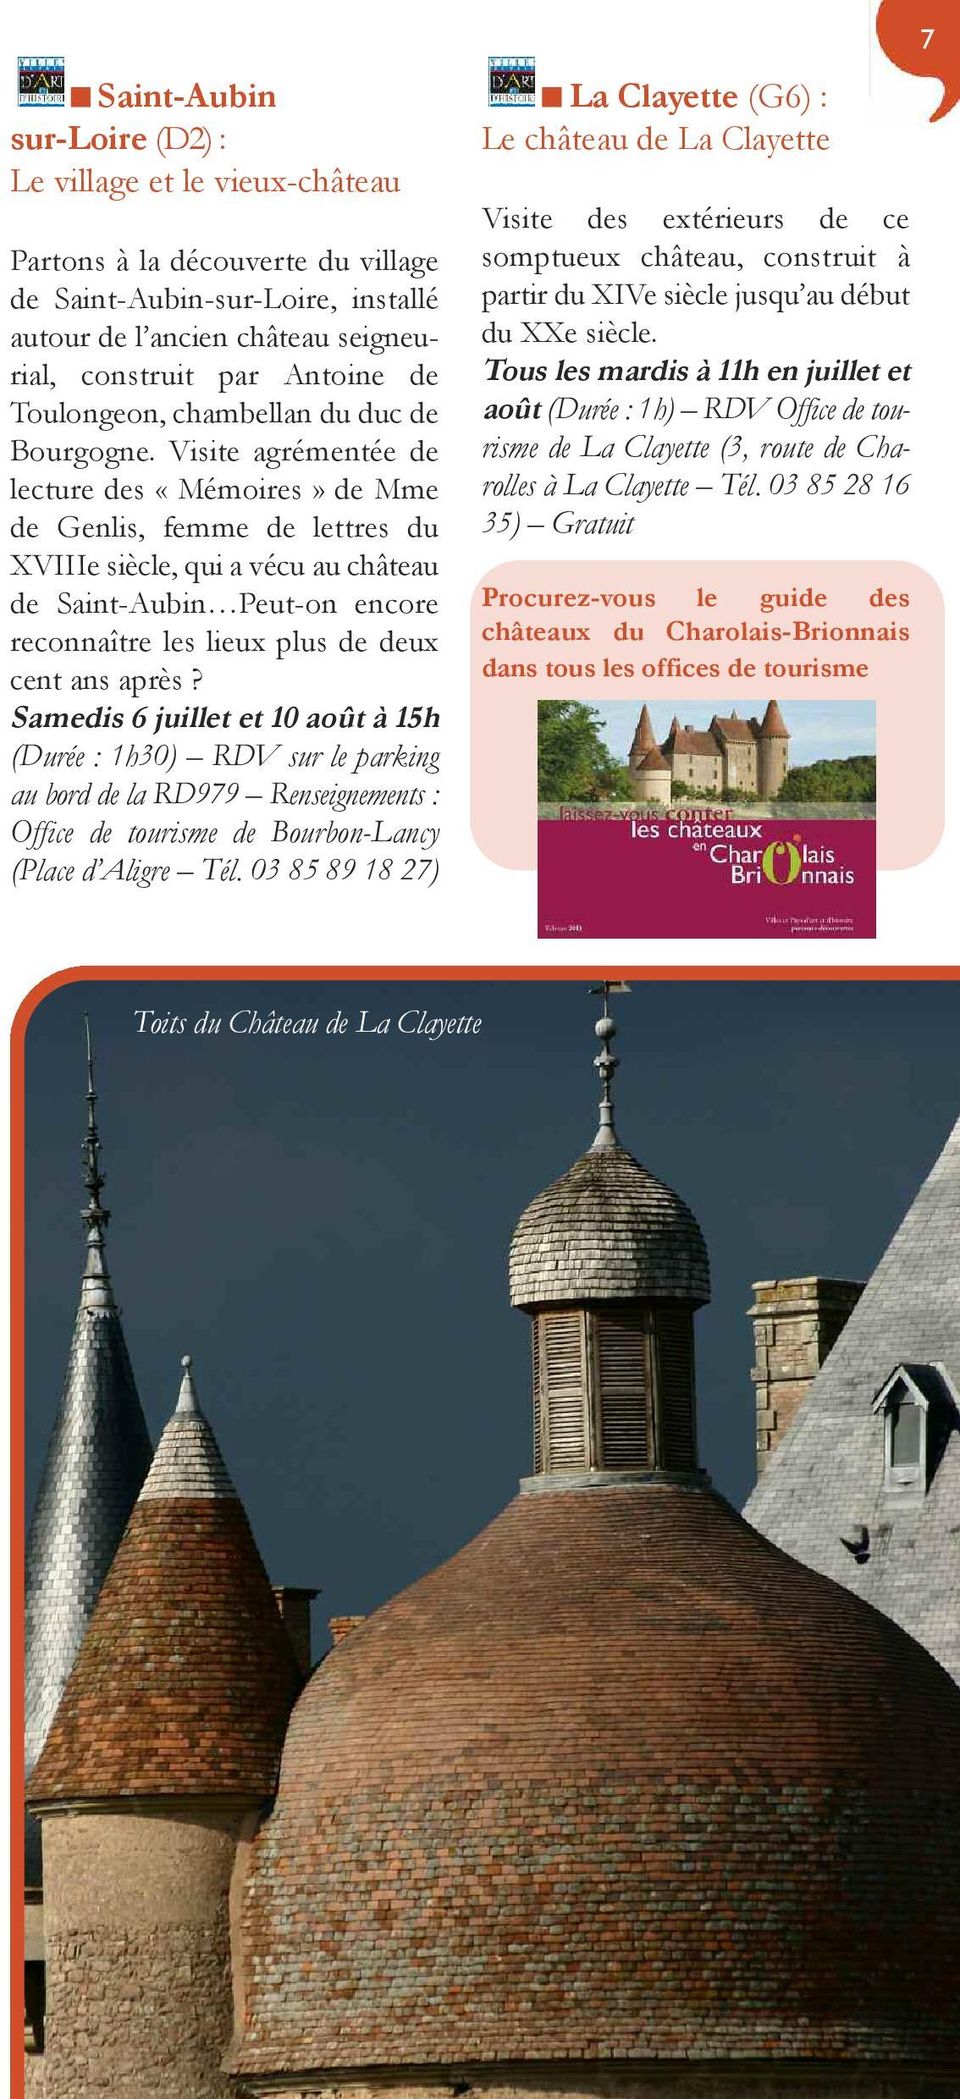 Visite agrémentée de lecture des «Mémoires» de Mme de Genlis, femme de lettres du XVIIIe siècle, qui a vécu au château de Saint-Aubin Peut-on encore reconnaître les lieux plus de deux cent ans après?